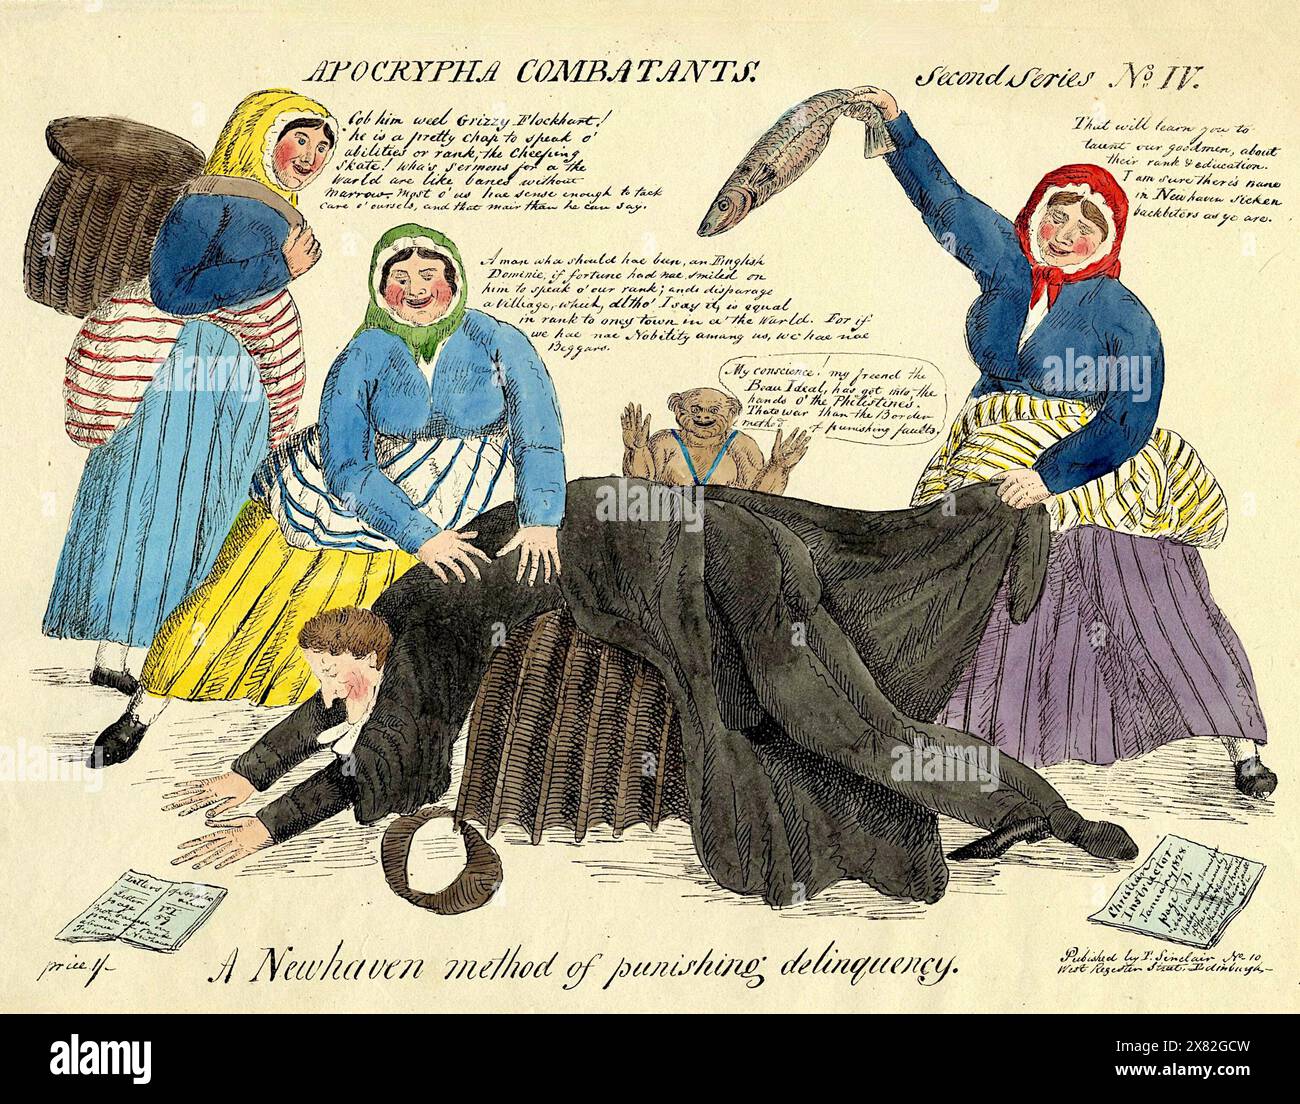 Apocrypha-Kämpfer - Eine Newhaven-Methode zur Straffung von Kriminalität - 1828 Stockfoto